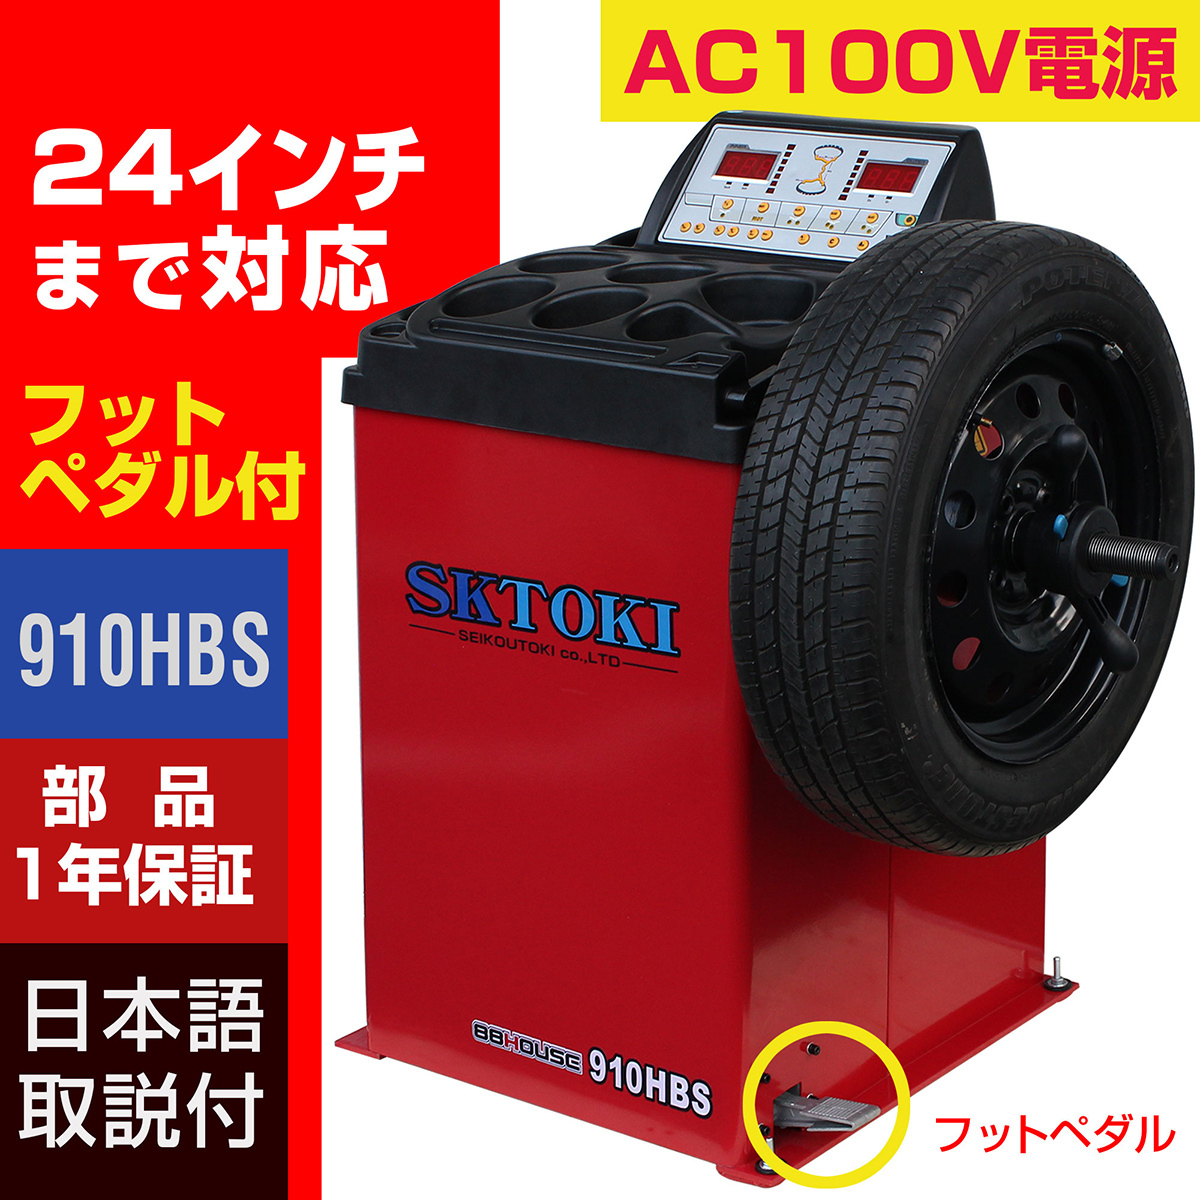  tire changer + balancer set SKTOKI 887HC 910HBS AC100V 50/60Hz tire exchange maintenance equipment garage 